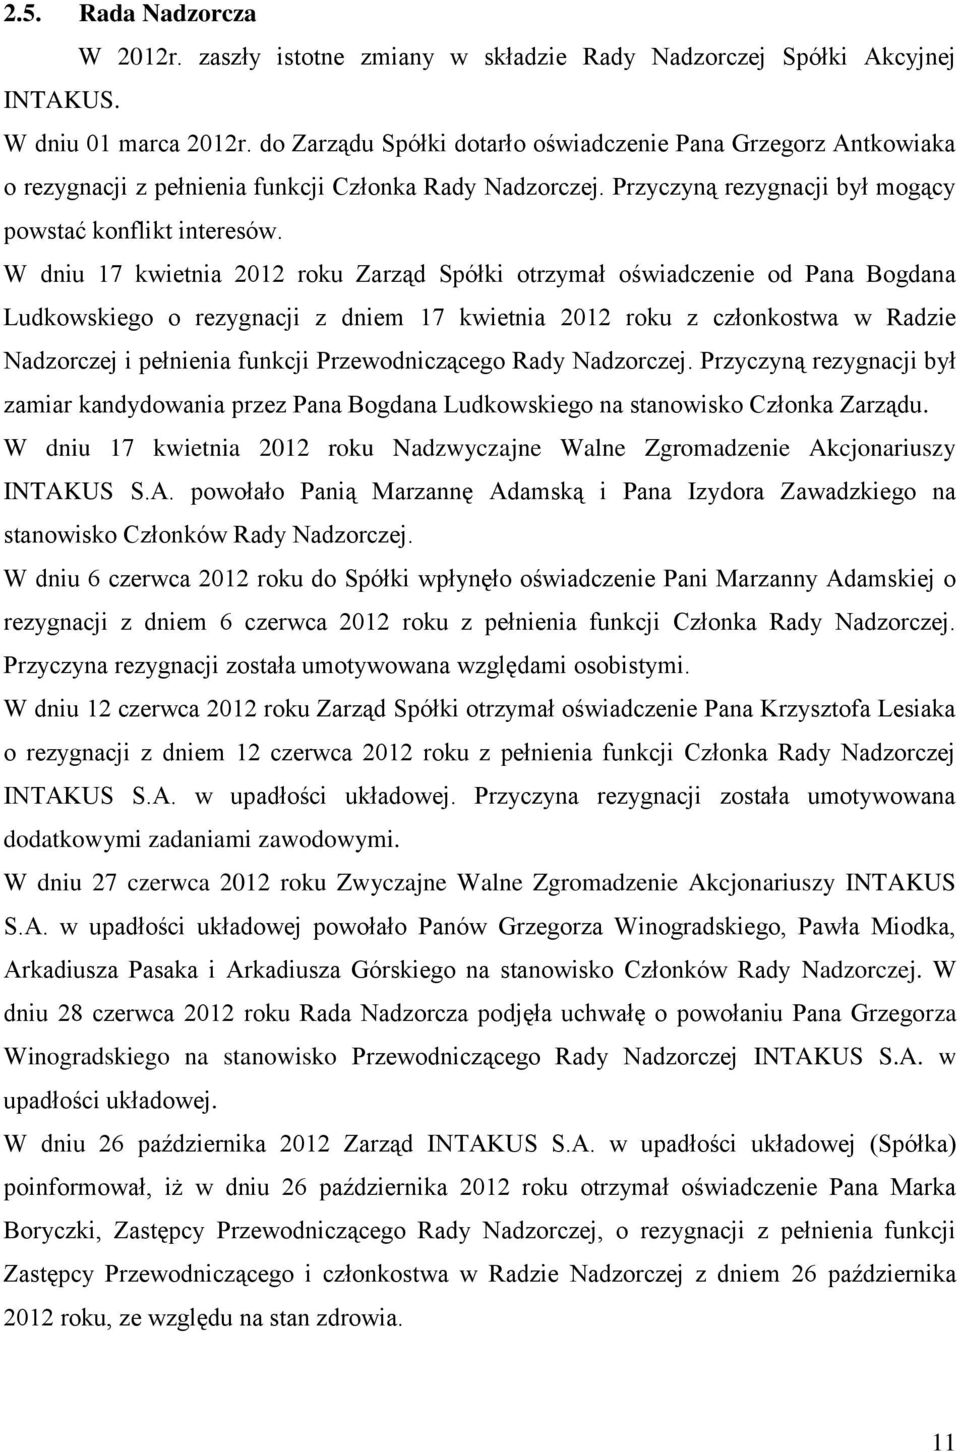 W dniu 17 kwietnia 2012 roku Zarząd Spółki otrzymał oświadczenie od Pana Bogdana Ludkowskiego o rezygnacji z dniem 17 kwietnia 2012 roku z członkostwa w Radzie Nadzorczej i pełnienia funkcji